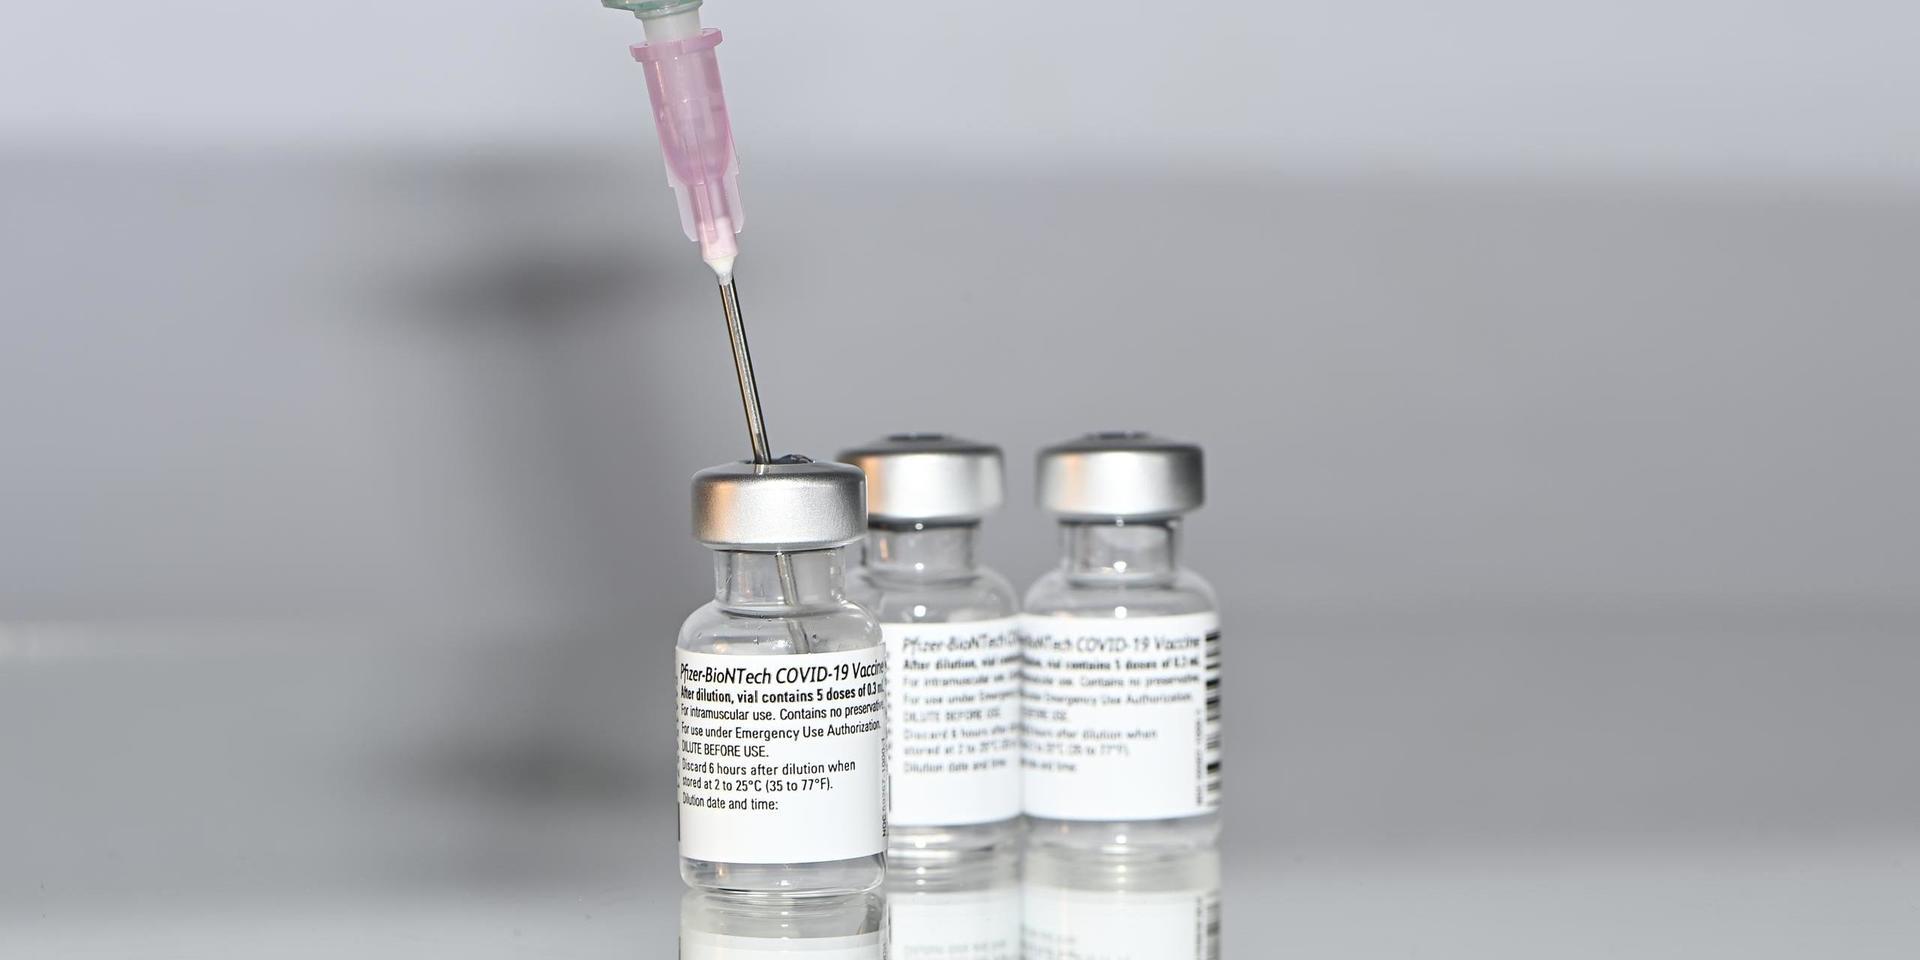 EKSJÖ 20201229   
Pfizer-BioNTech covid-19 vaccin första leveransen till Sverige.
Foto Mikael Fritzon / TT kod 62360